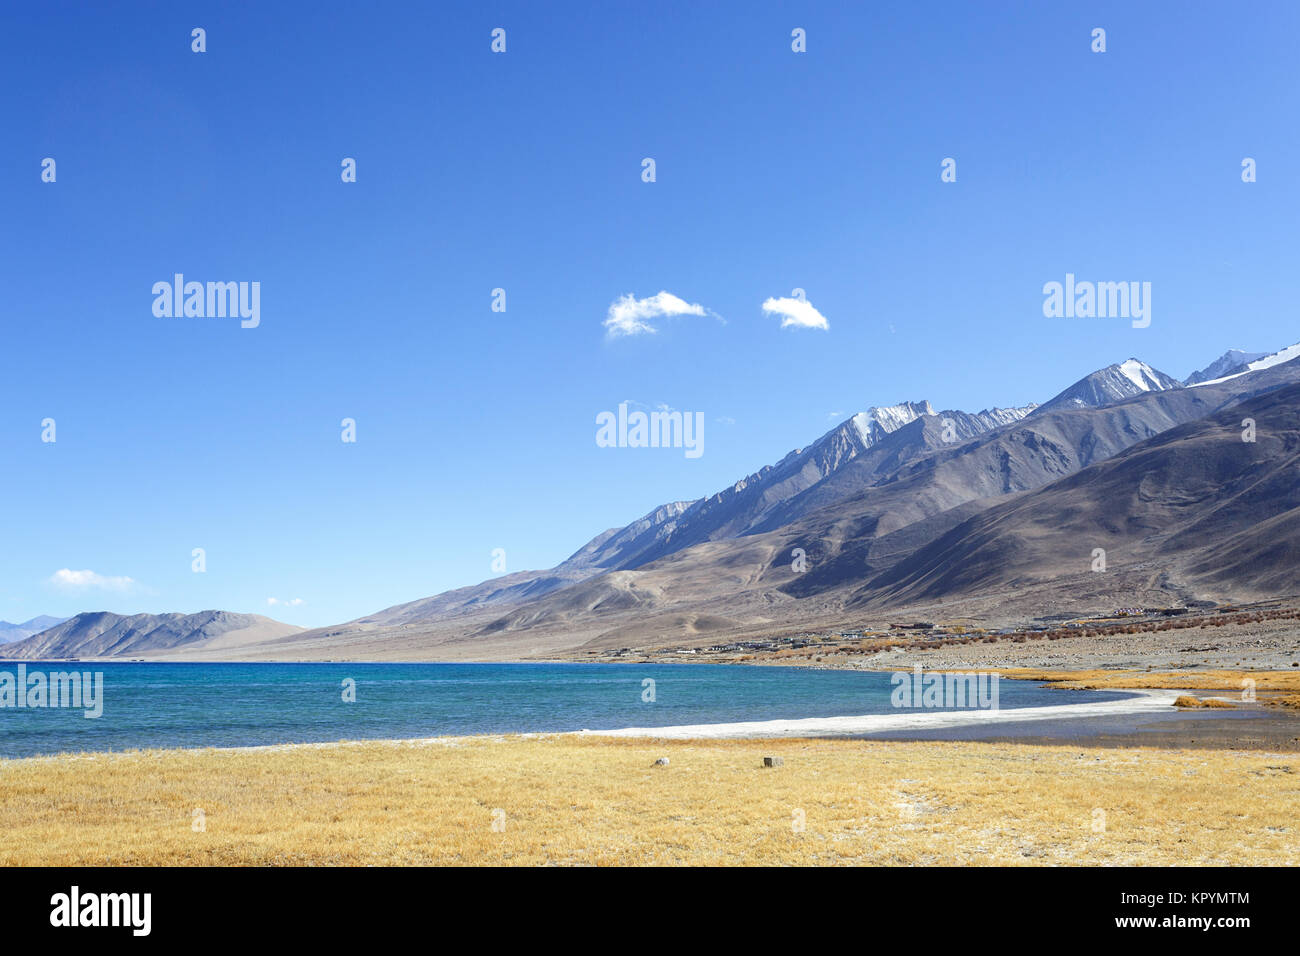 El hermoso paisaje del lago Pangong Tso y sus alrededores, Ladakh, Jammu y Cachemira, en la India. Foto de stock